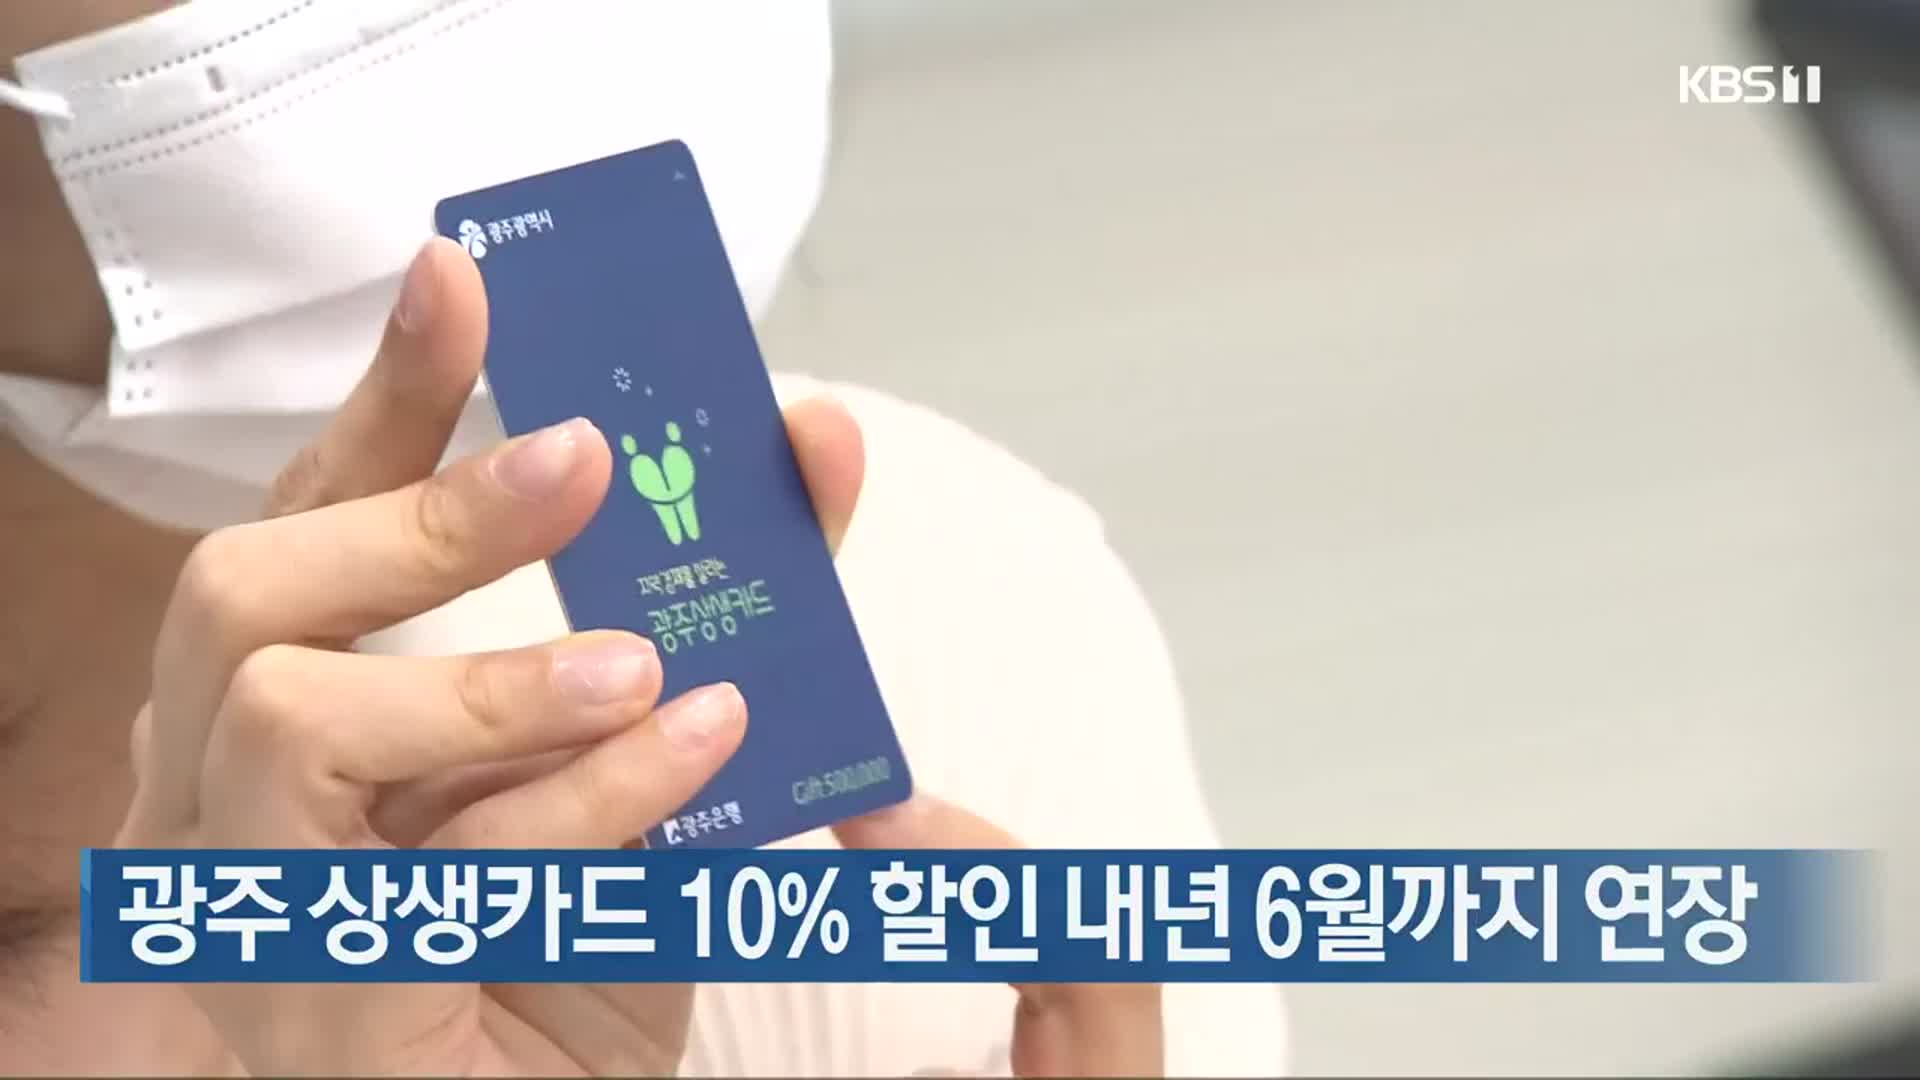 광주 상생카드 10% 할인 내년 6월까지 연장